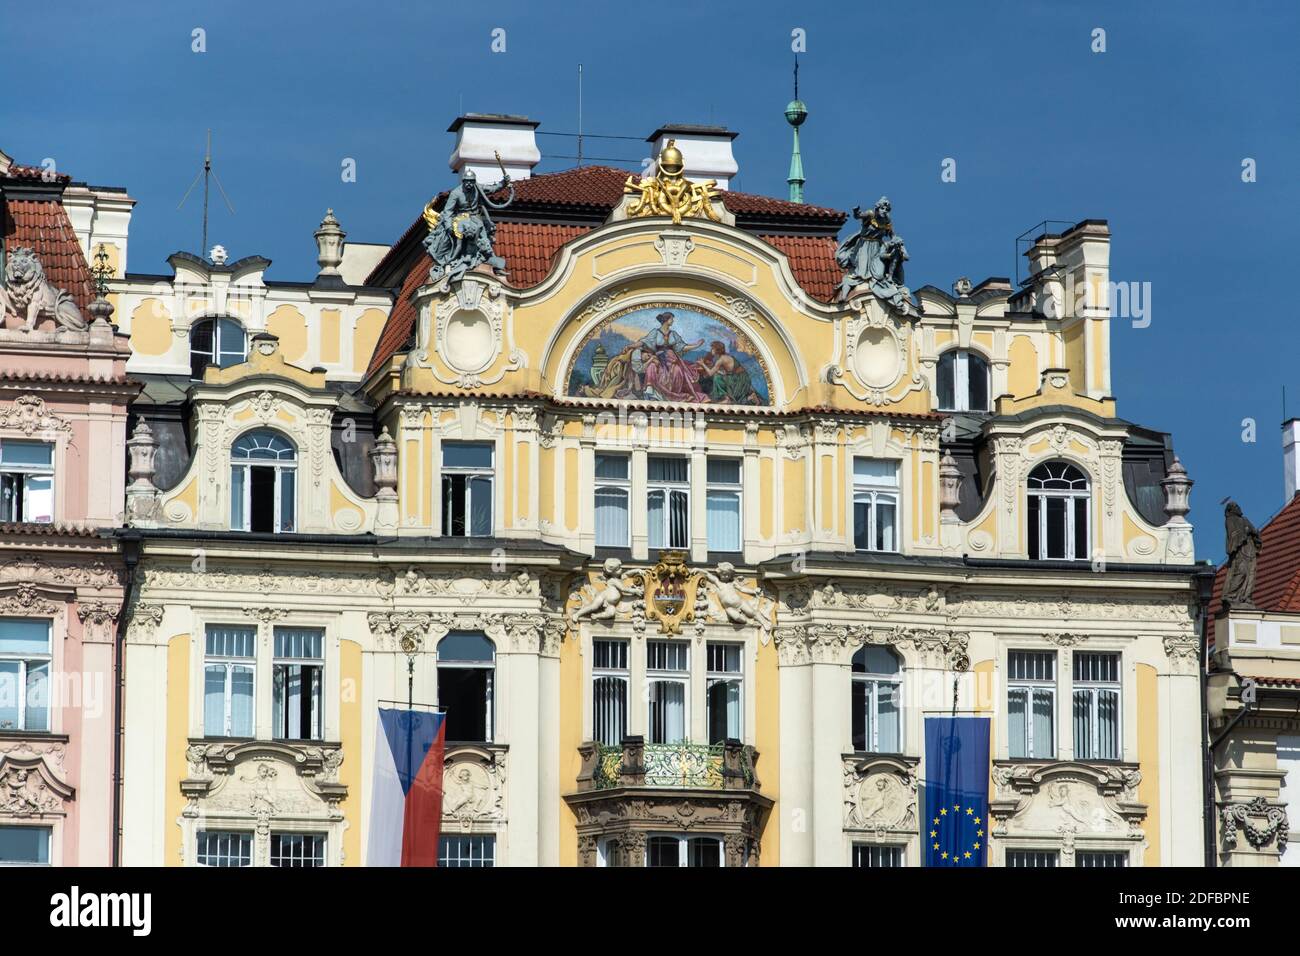 Prag ist die Hauptstadt der Tschechischen Republik und liegt an der Moldau. Die 'Stadt der hundert Tuerme' ist bekannt für den Altstaedter Ring mit bu Banque D'Images